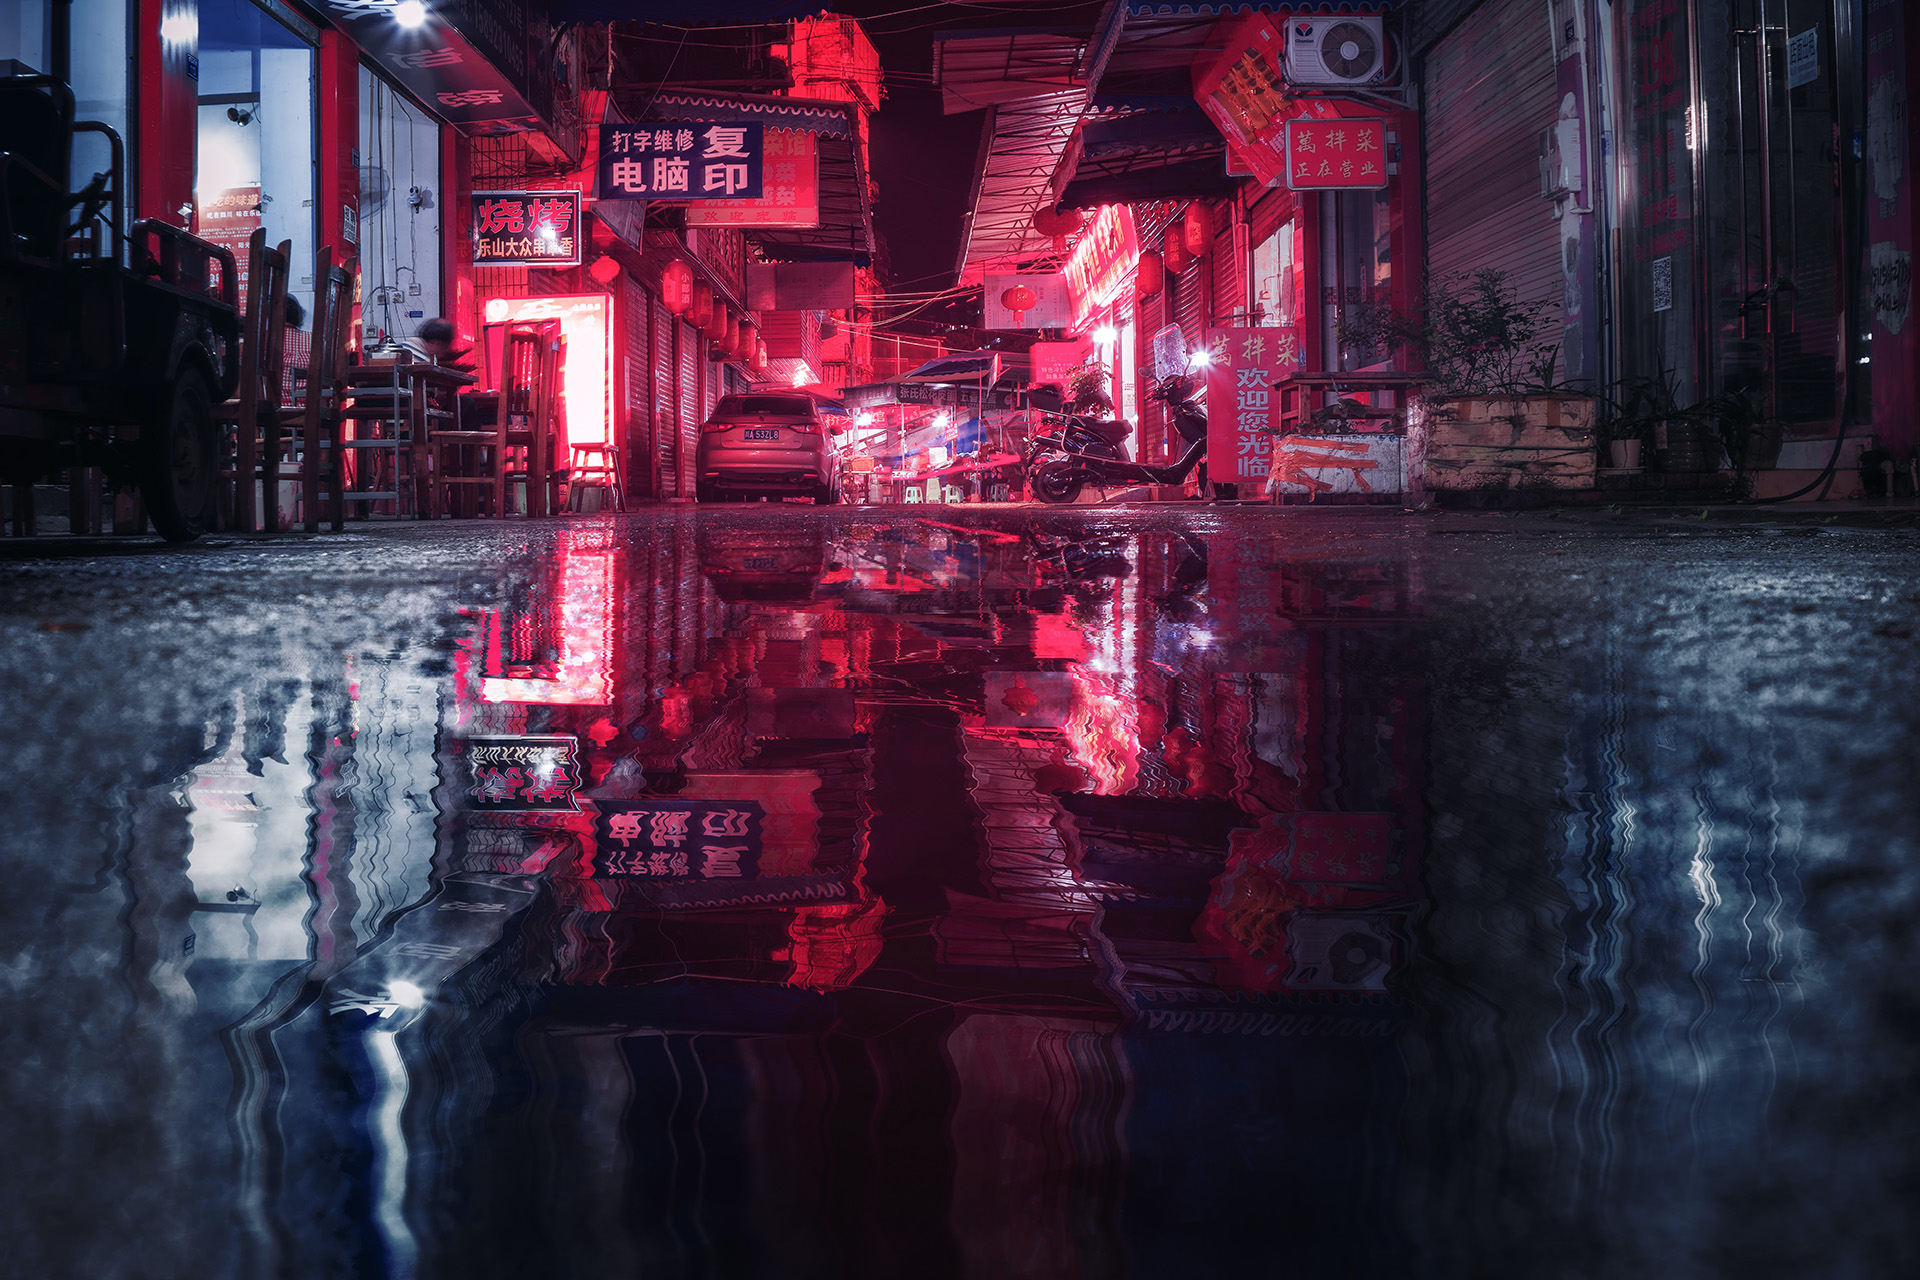 Cyberpunk Night City